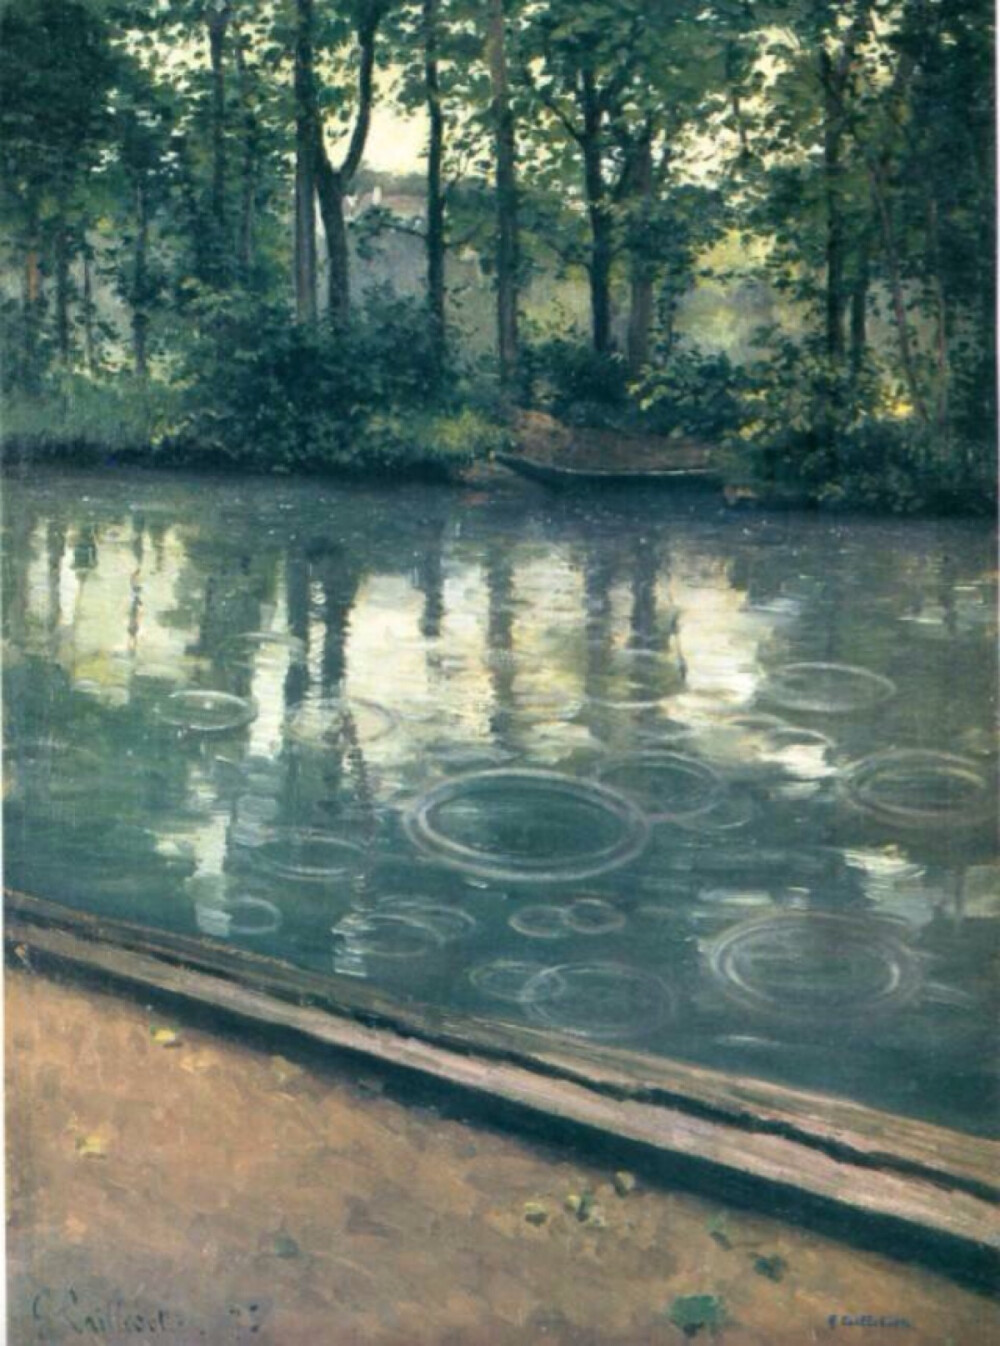  图为19世纪法国印象主义画家古斯塔夫·卡耶博特（1848-1894）的作品《耶尔河的雨》。“这时候我注视着眼前的雨水，心里想着，下吧、下吧，随便你下到哪一天，大地要再度绚丽光彩起来，经过了无尽的雨水之后”（三毛《雨季不再来》）。